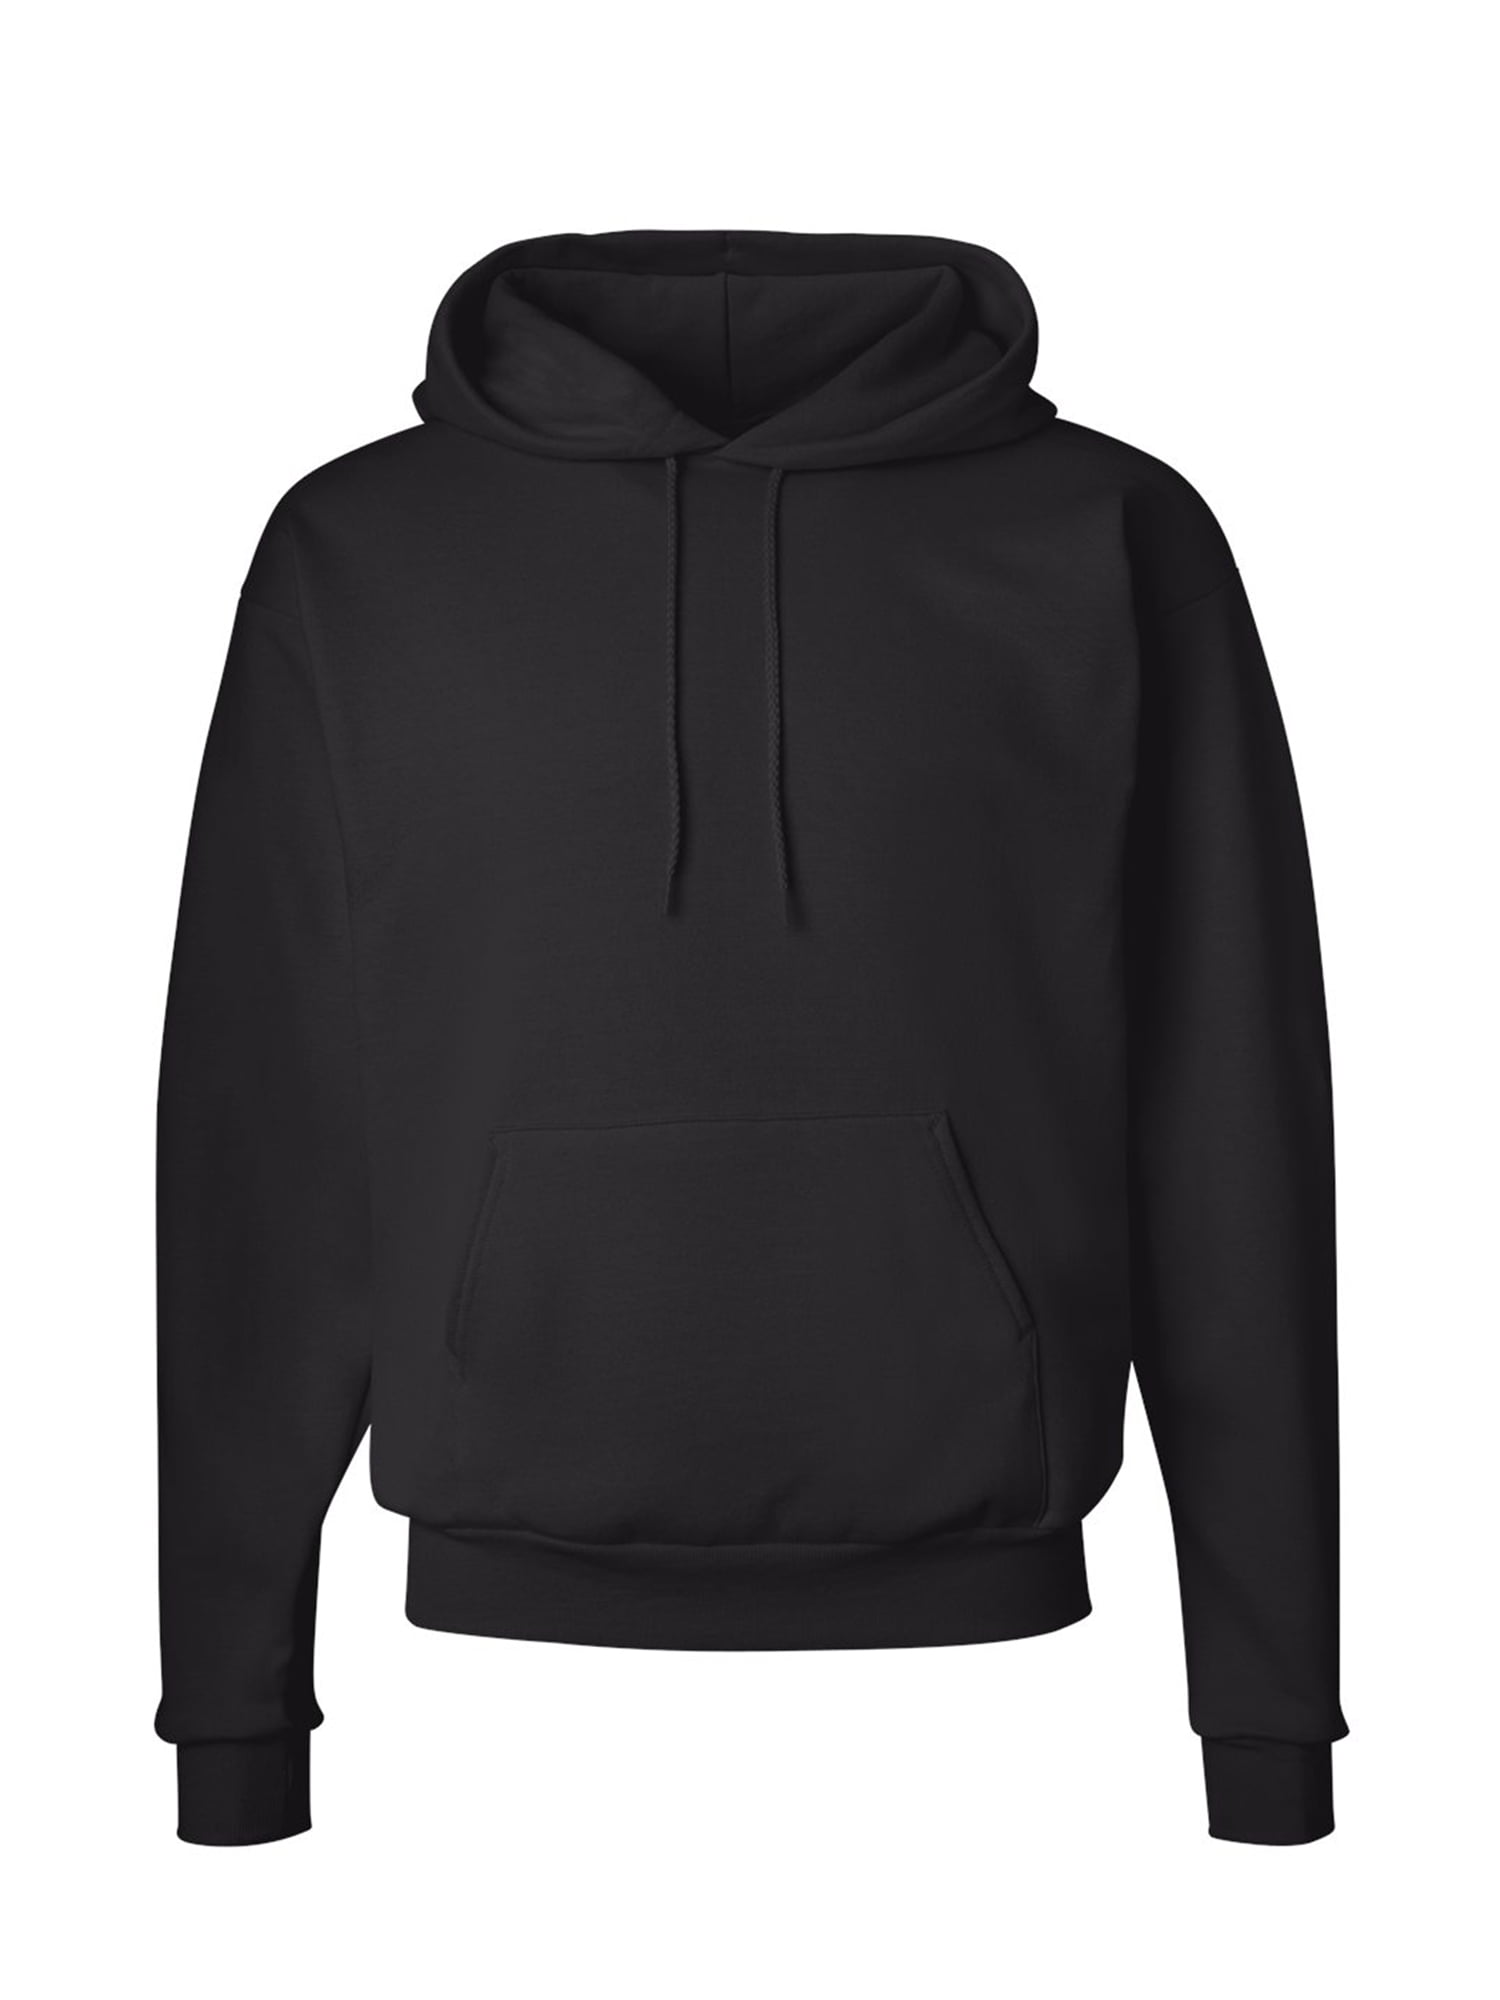 Unisex Hanes Ecosmart Hooded Sweatshirt for Men Hanes Hoodie for Women